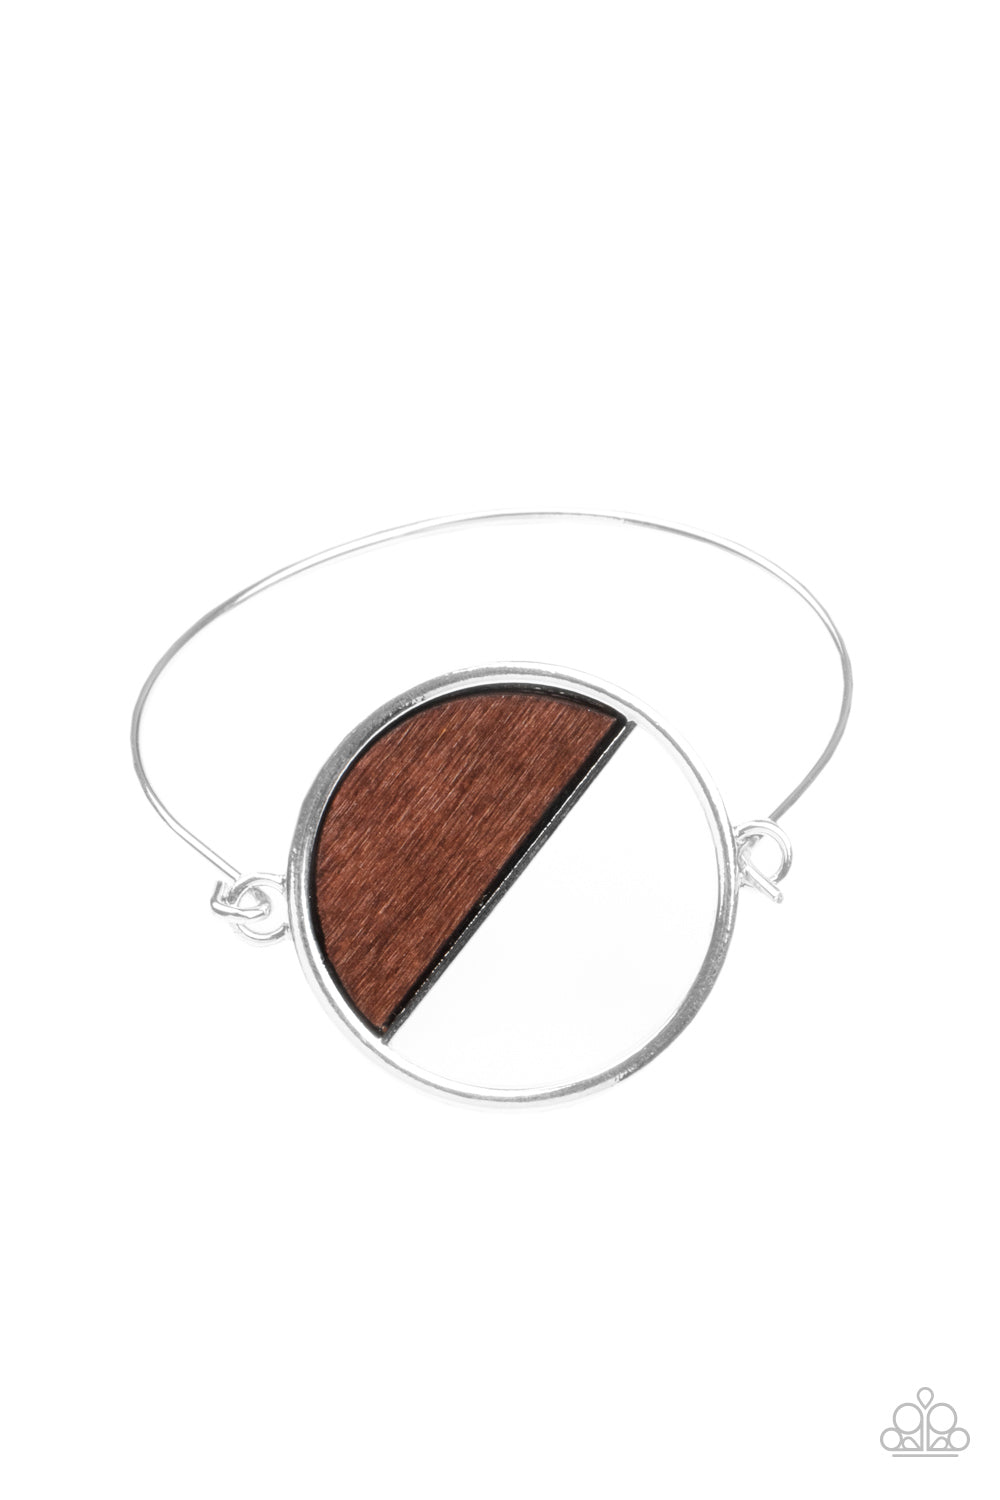 Timber Trade - Brown Bracelet- Paparazzi Accessories - Paparazzi Accessories 